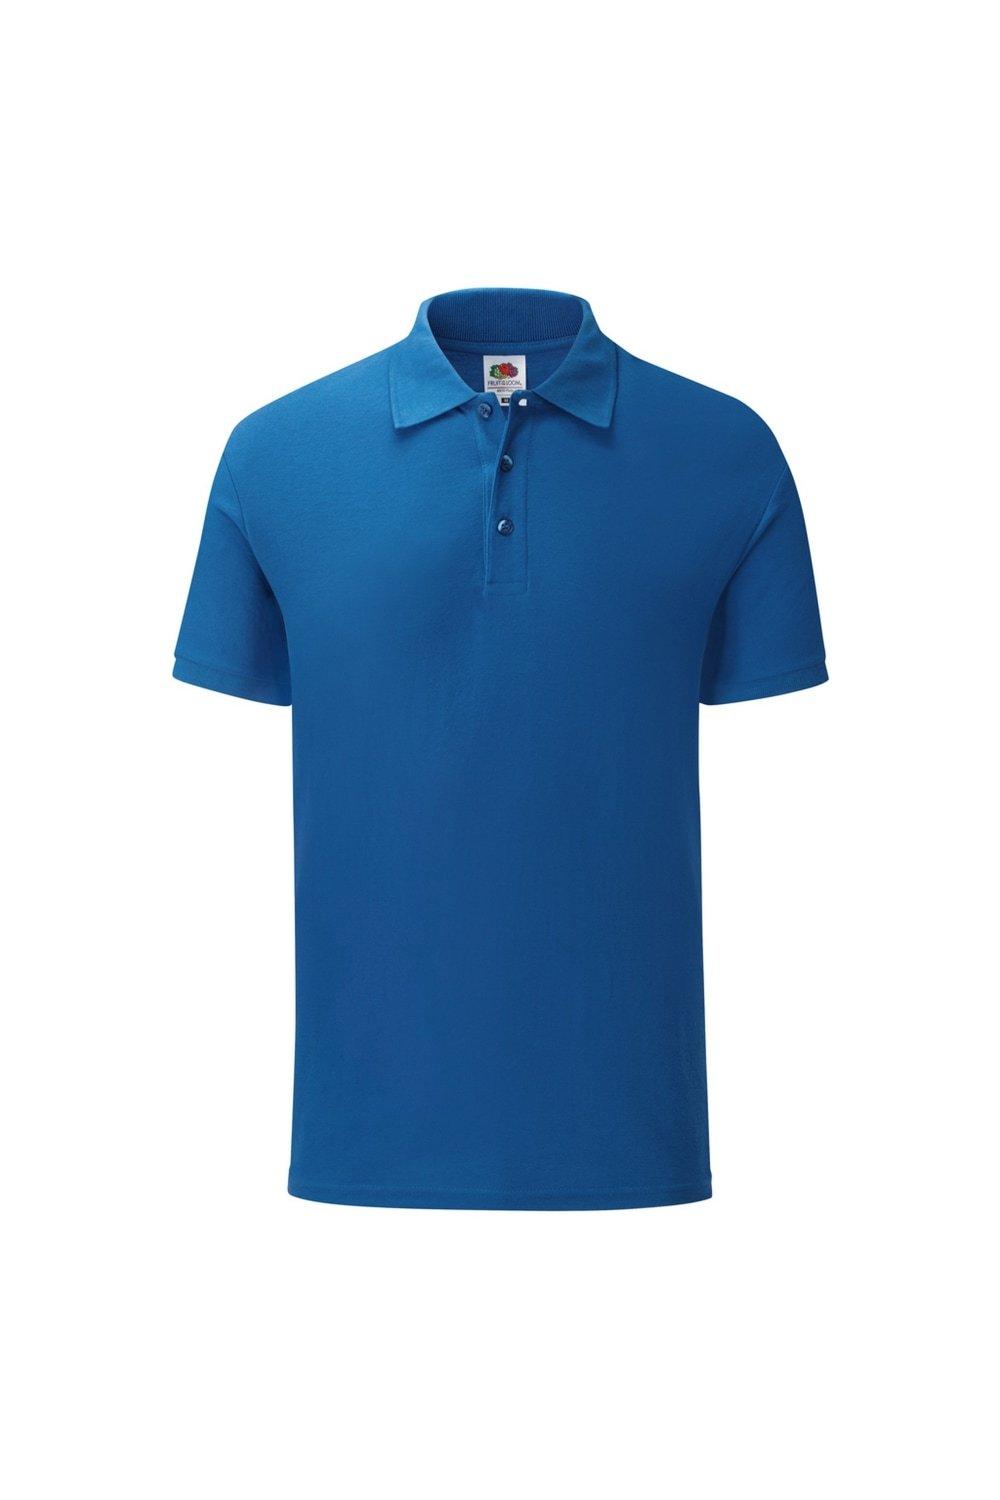 Индивидуальная рубашка-поло пику из поли/хлопка , синий Fruit of the Loom